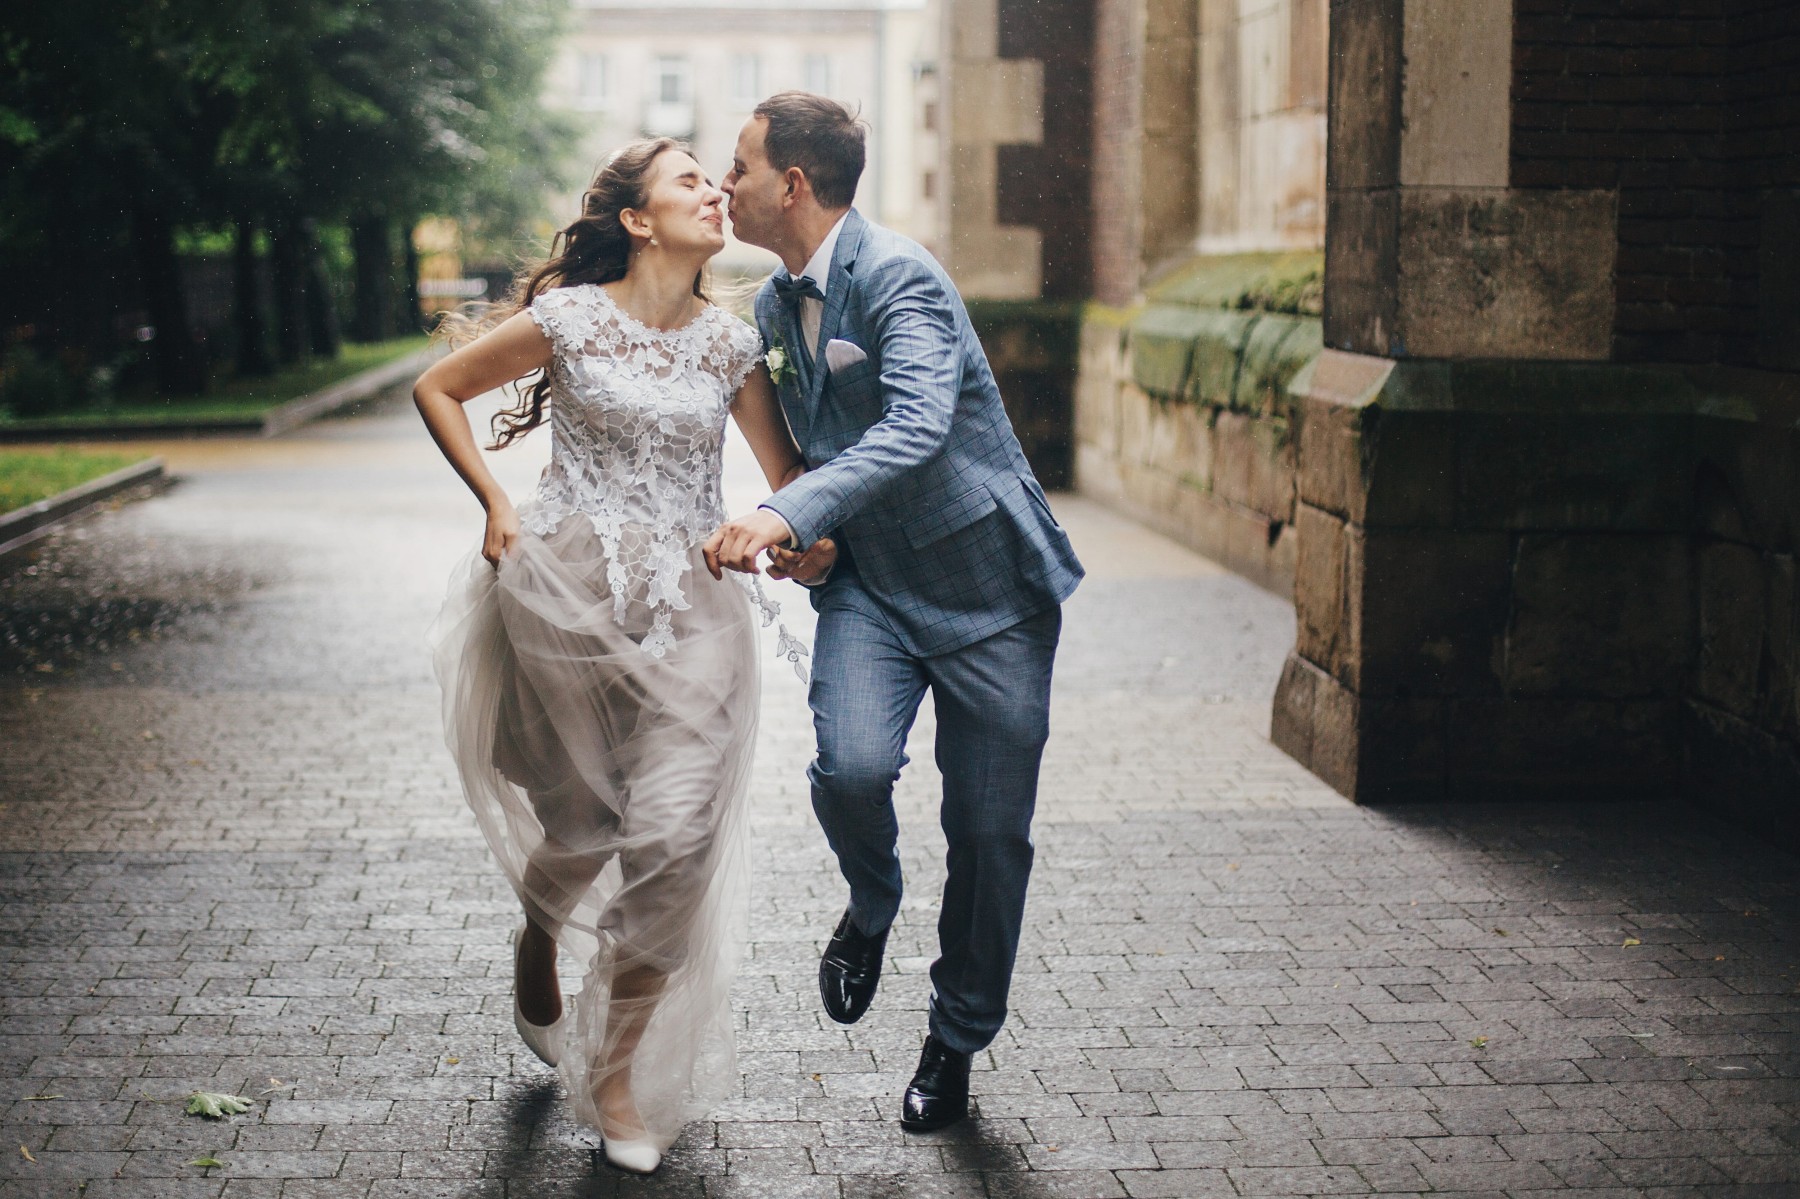 Nepokaž si svatbu! Aneb 7 nejčastějších chyb, které nevěsty dělají